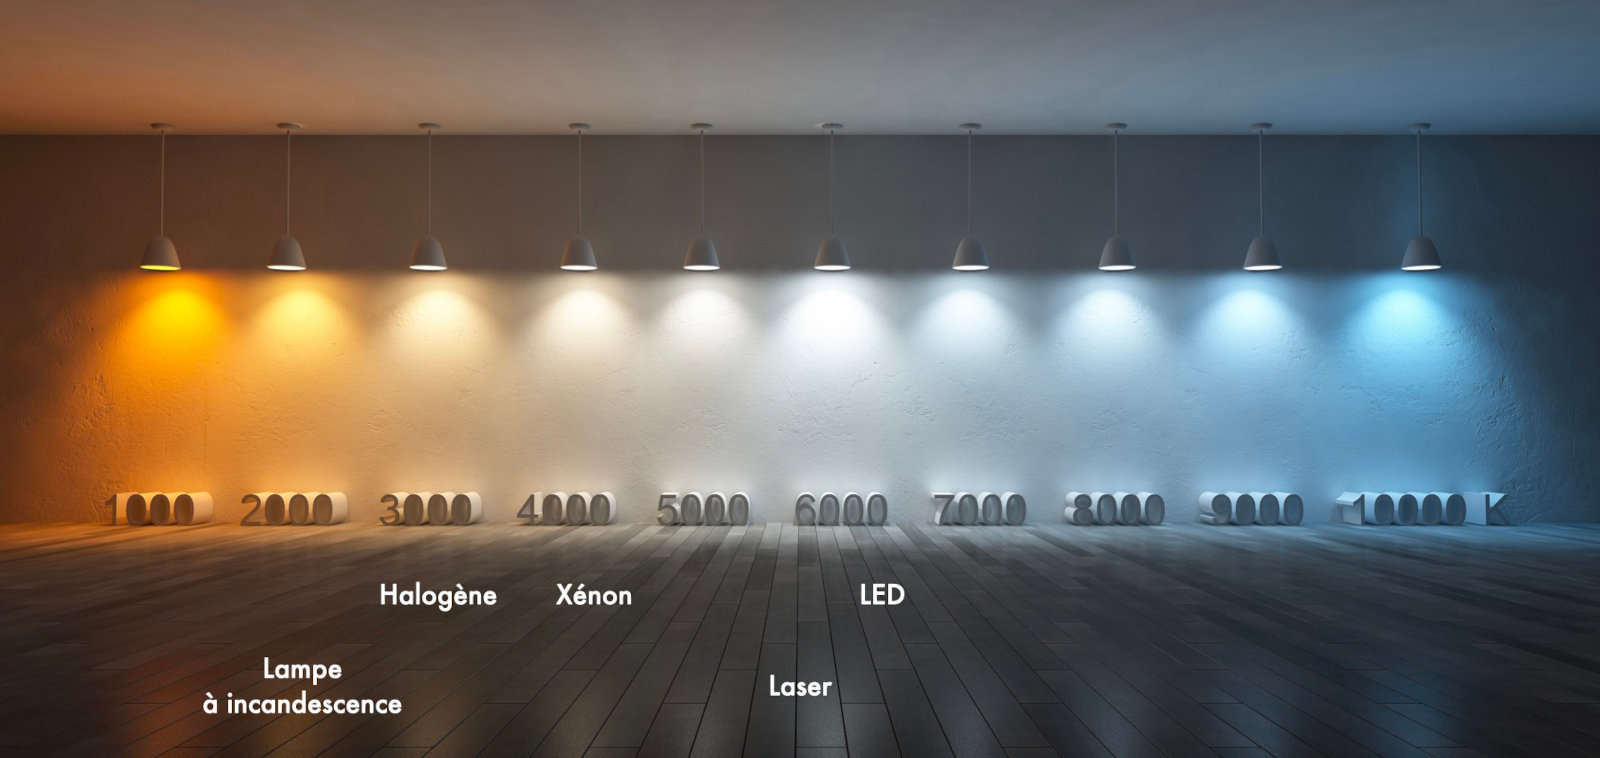 Température éclairage en fonction de la technologie (incandescence, halogène, xénon, LED, laser)